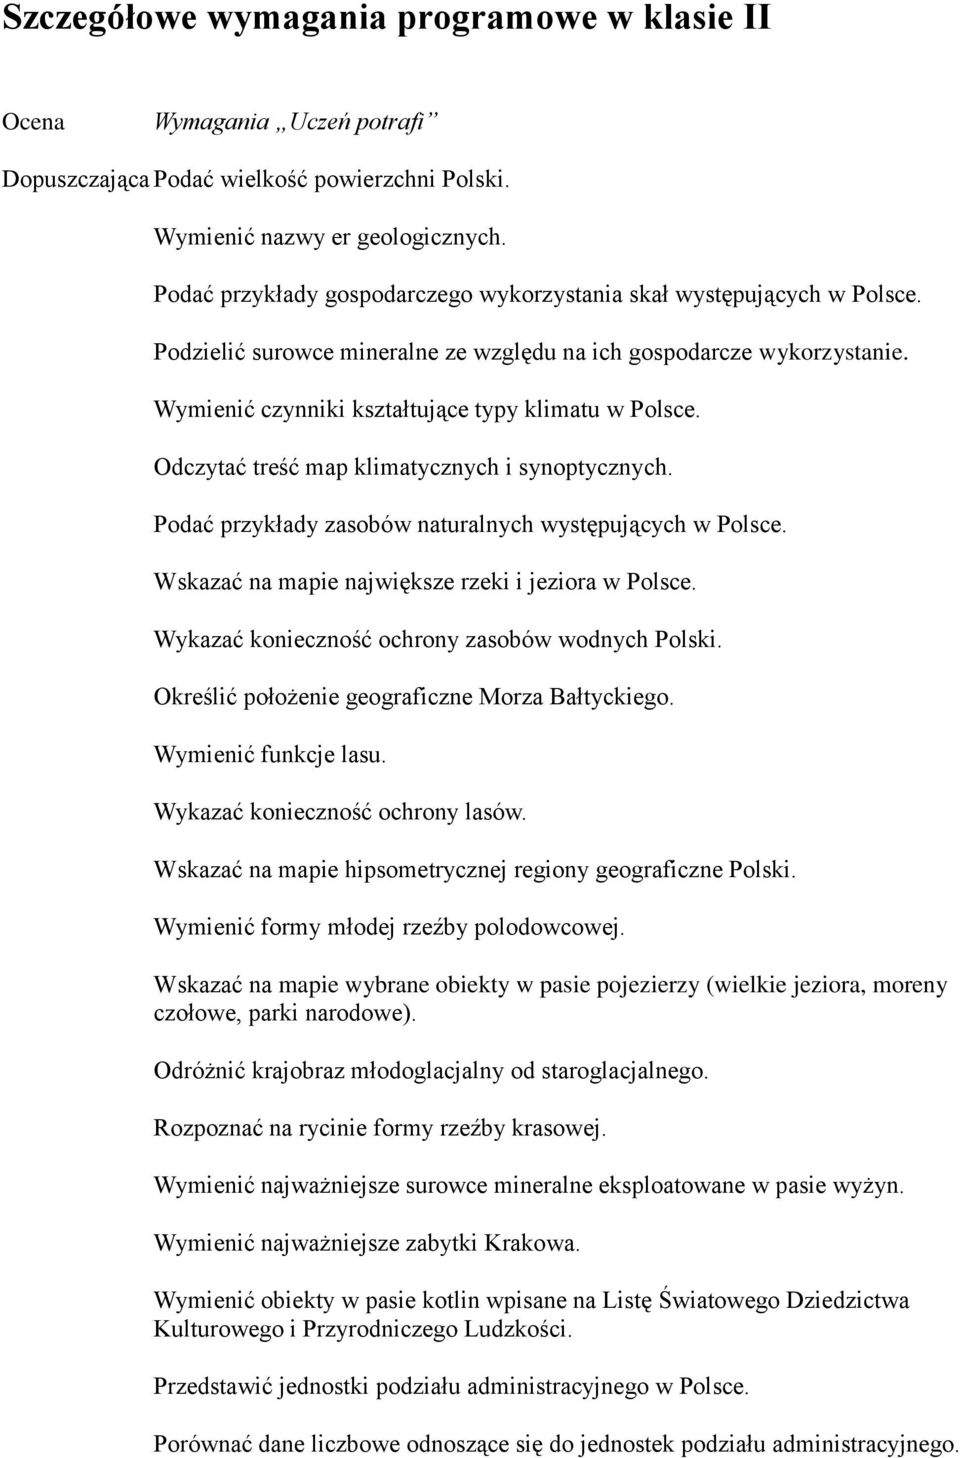 Odczytać treść map klimatycznych i synoptycznych. Podać przykłady zasobów naturalnych występujących w Polsce. Wskazać na mapie największe rzeki i jeziora w Polsce.